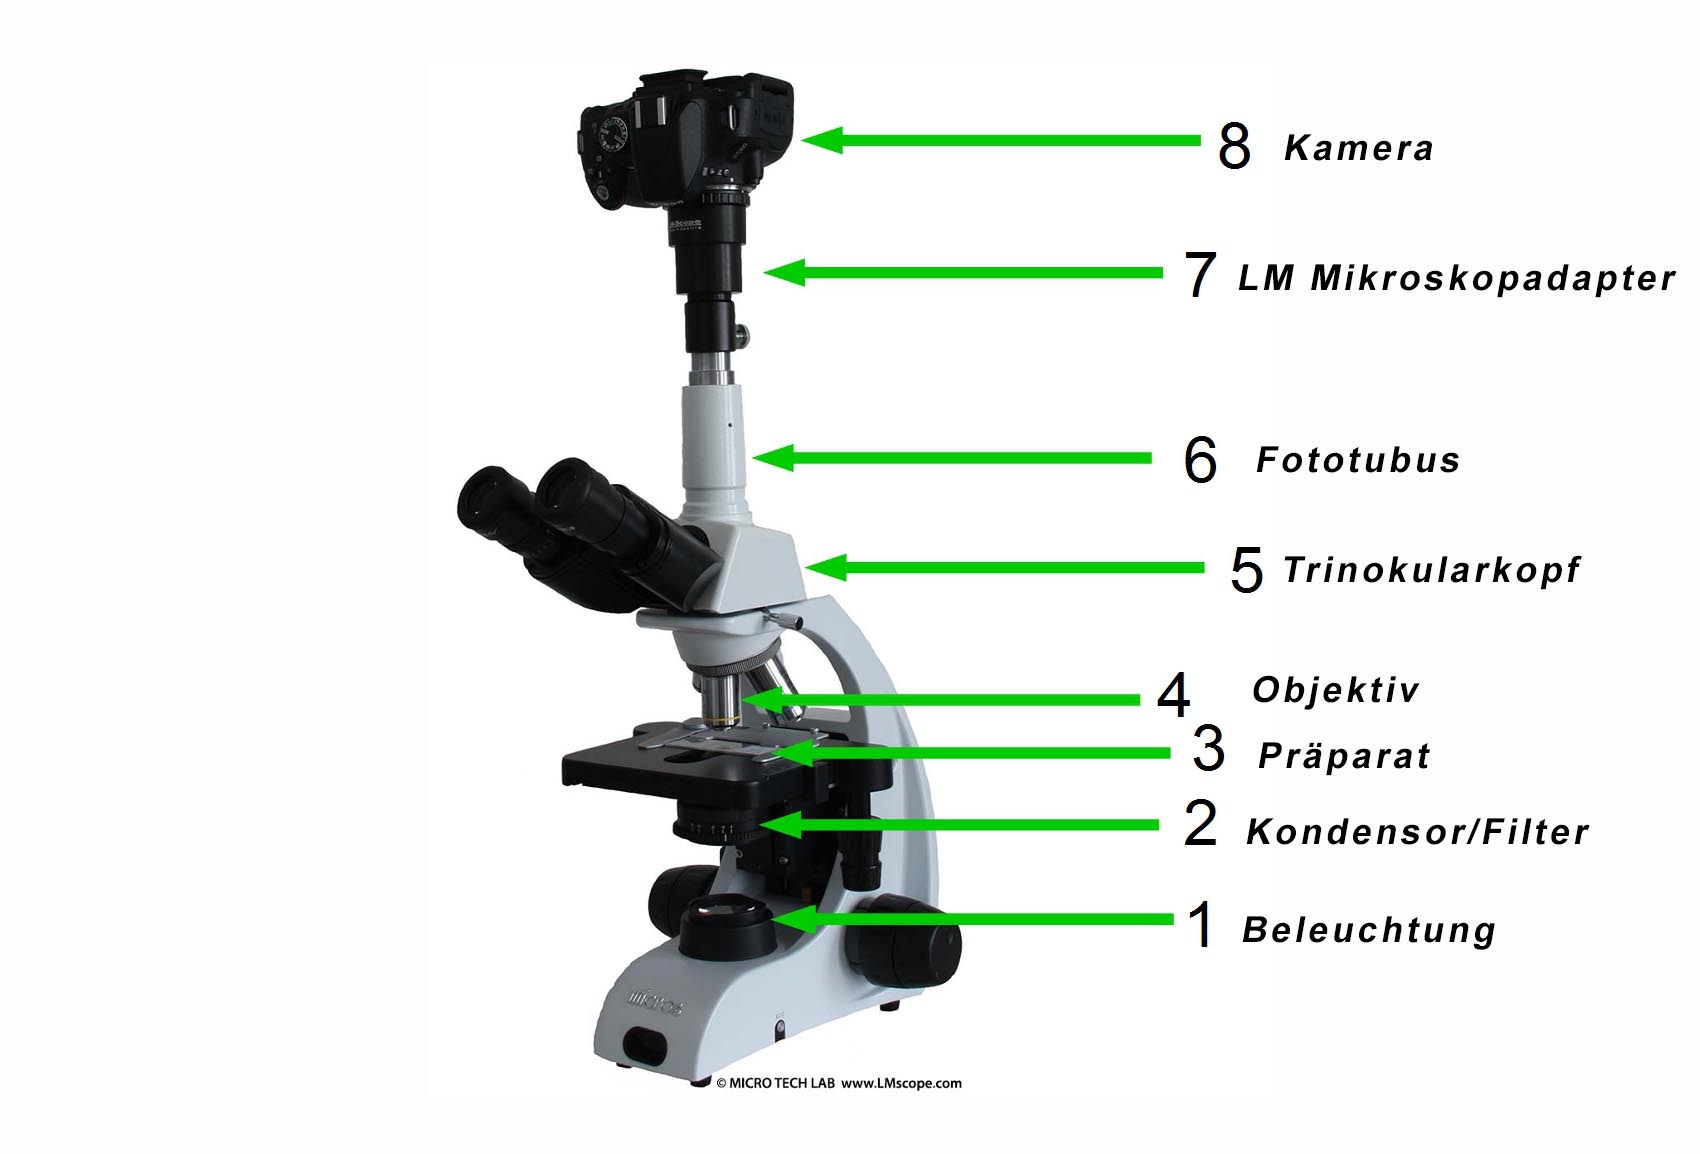 verifier le microscope et capteur d appareil photo pour les impuretes